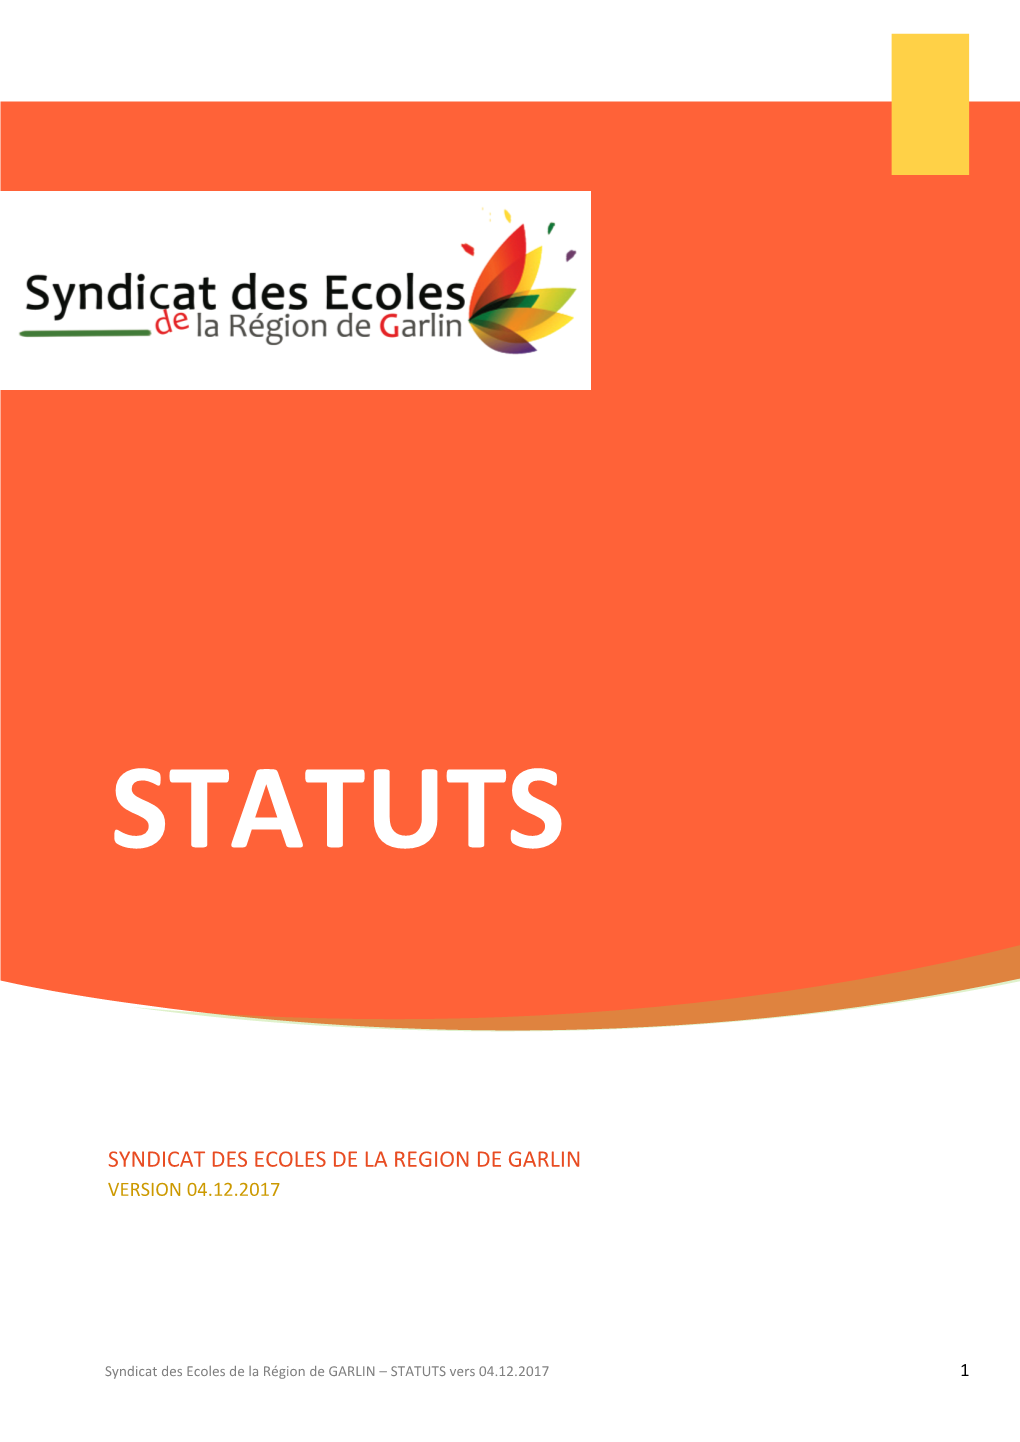 Syndicat Des Ecoles De La Region De Garlin Version 04.12.2017